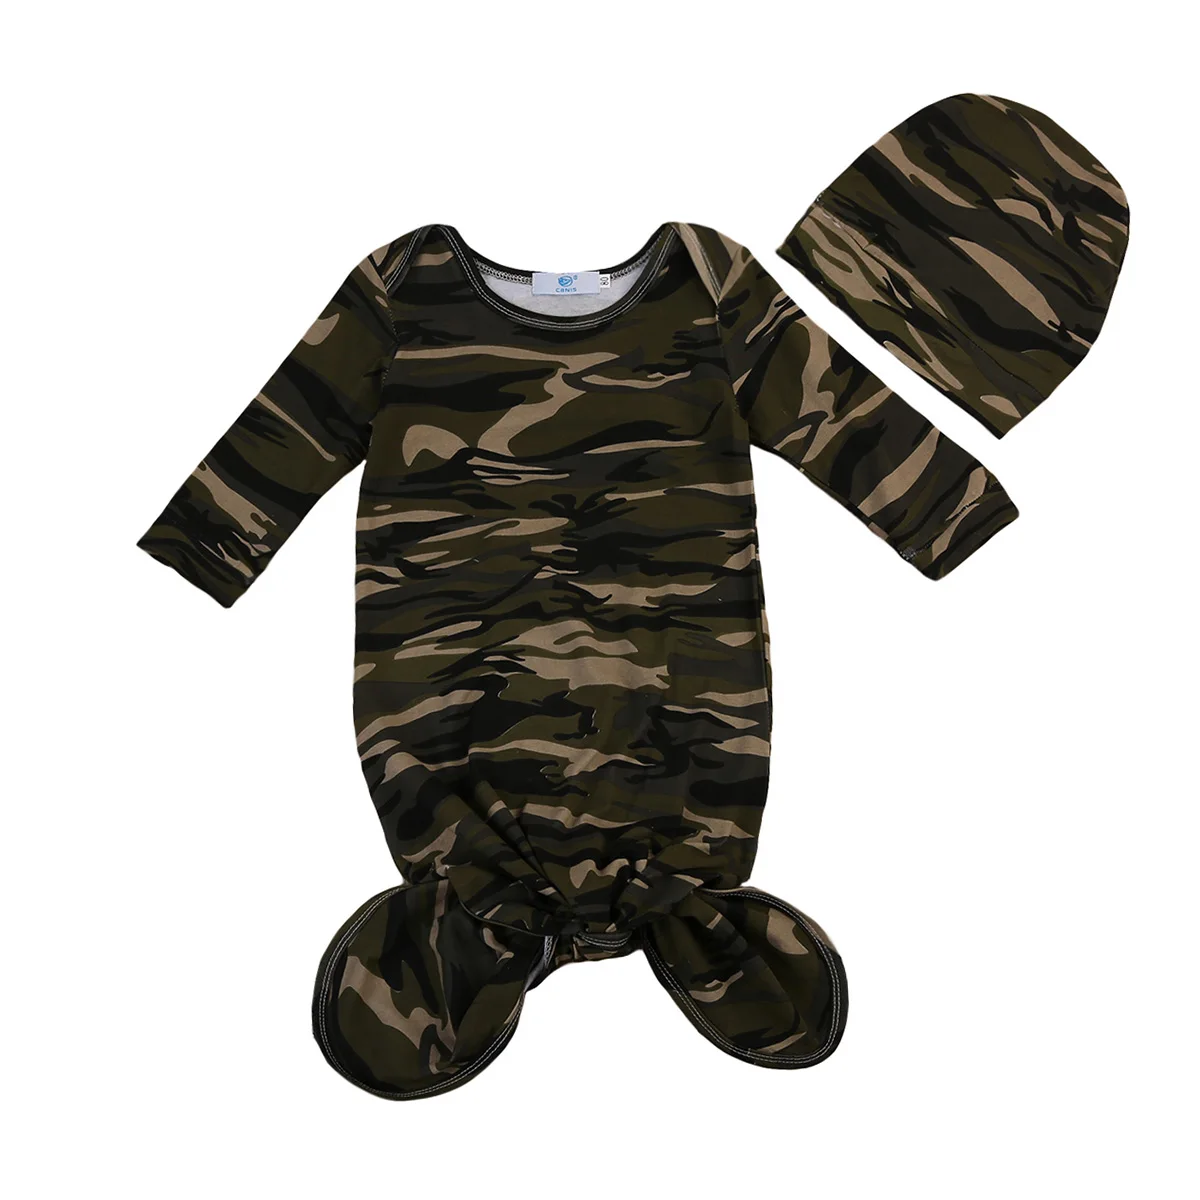 2 шт Новорожденный малыш ребенок камуфляж пеленать одеяло ребенок спальный мешок муслиновая пеленка повязка на голову